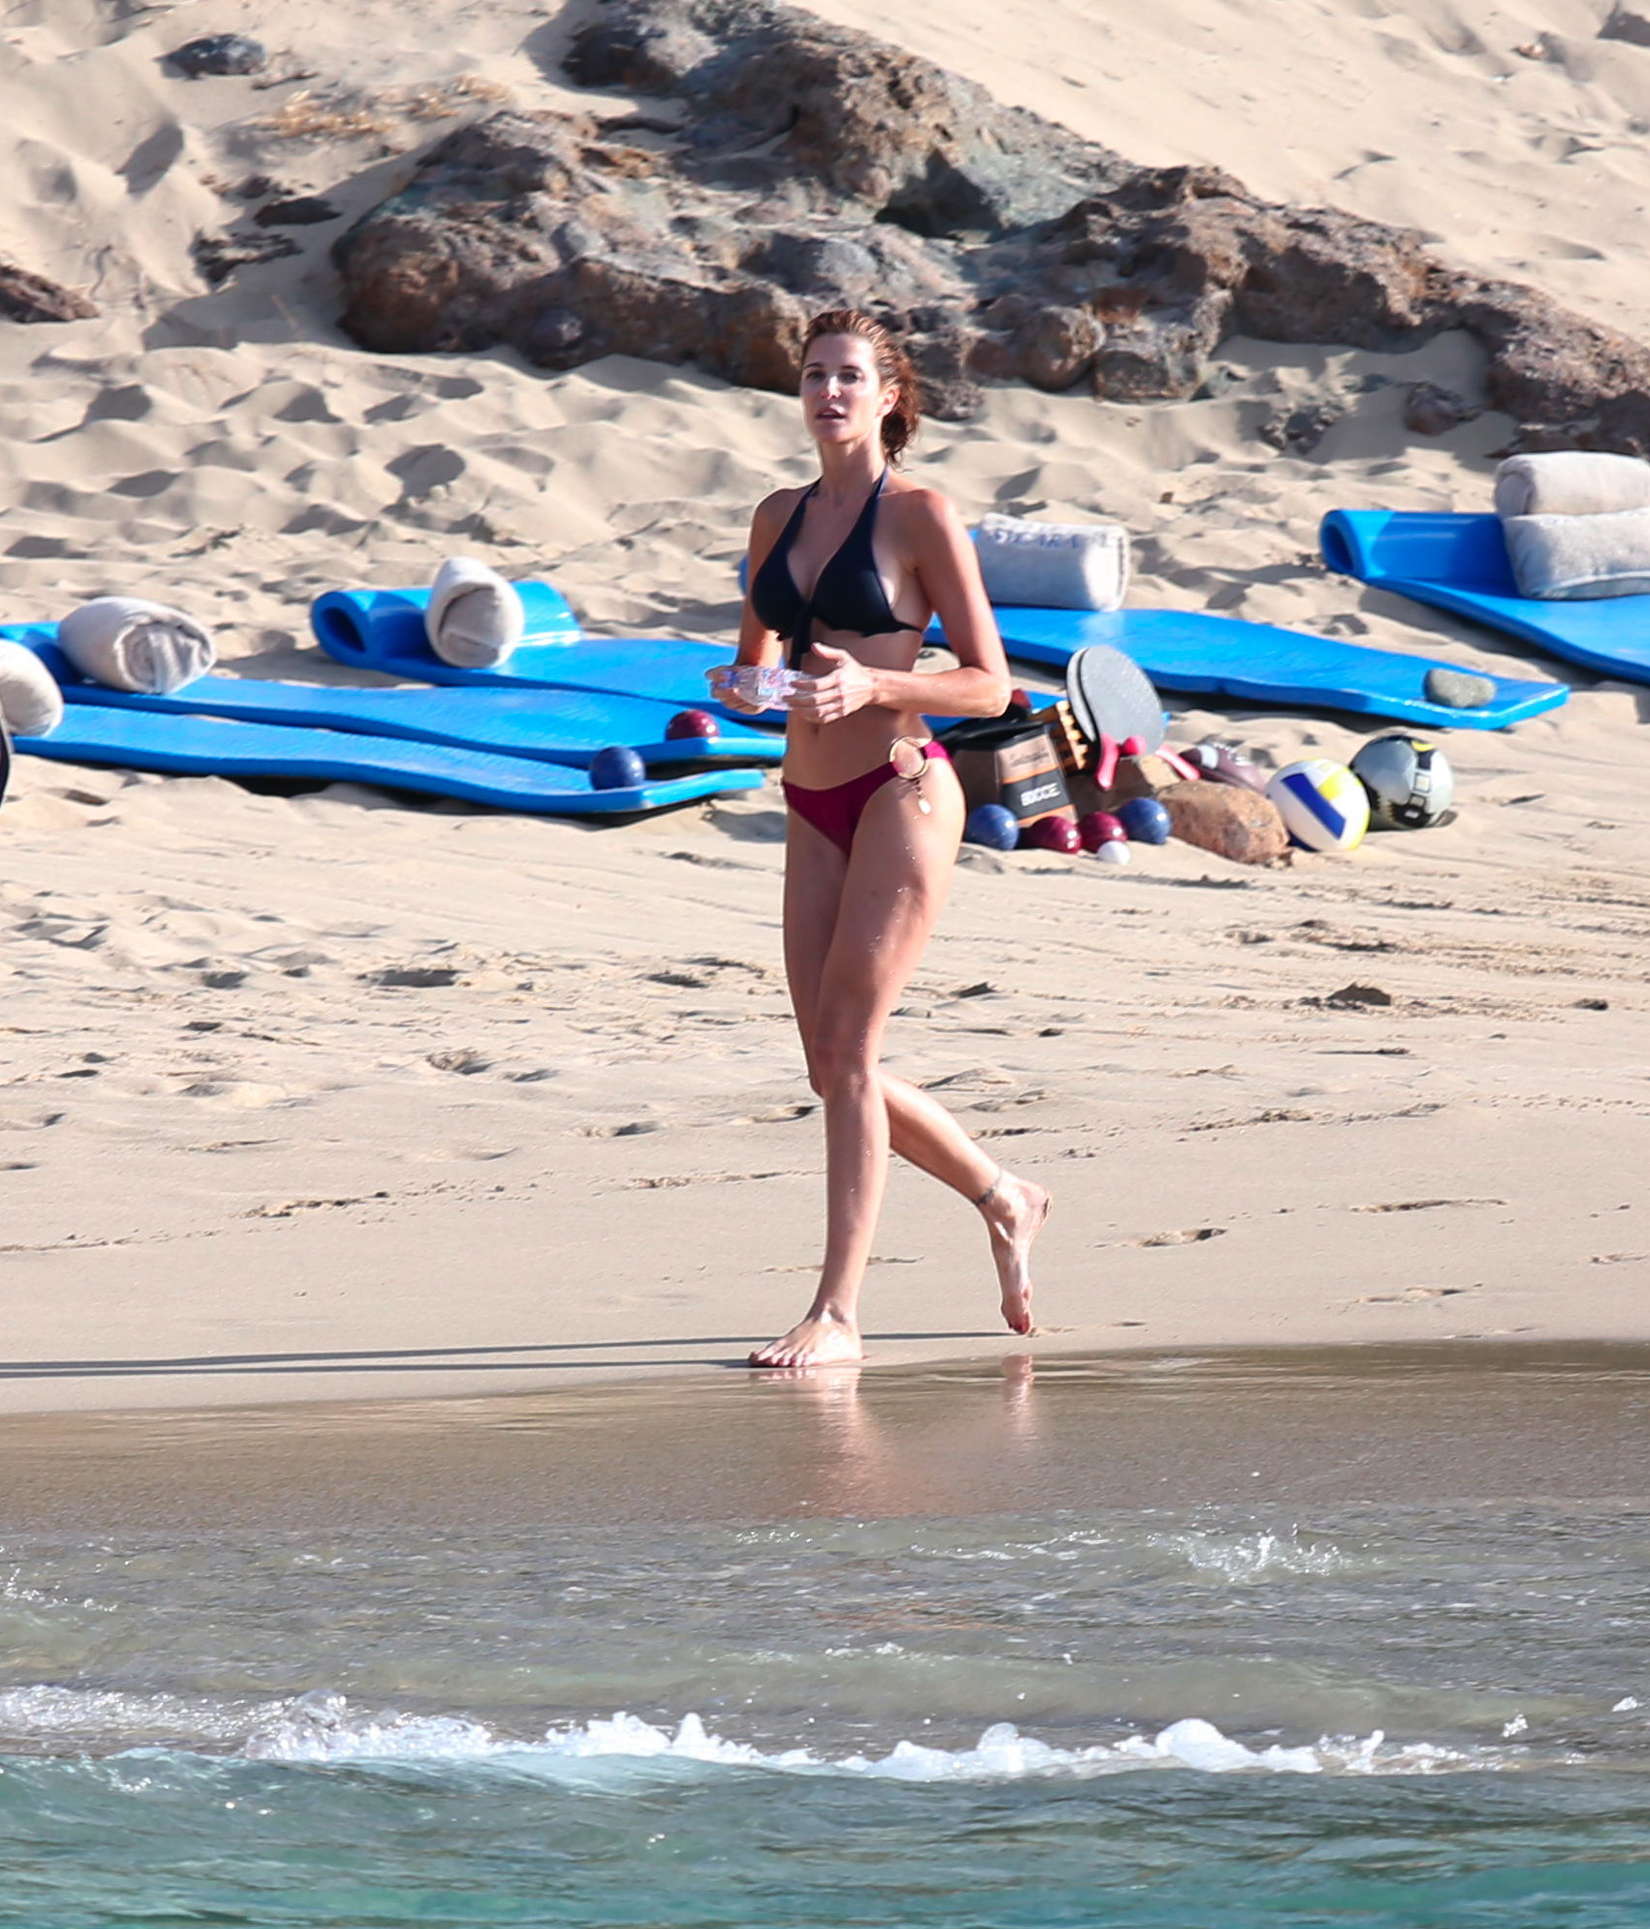 Stephanie Seymour 2013 : Stephanie Seymour in bikini in St Barts 2012-23. 